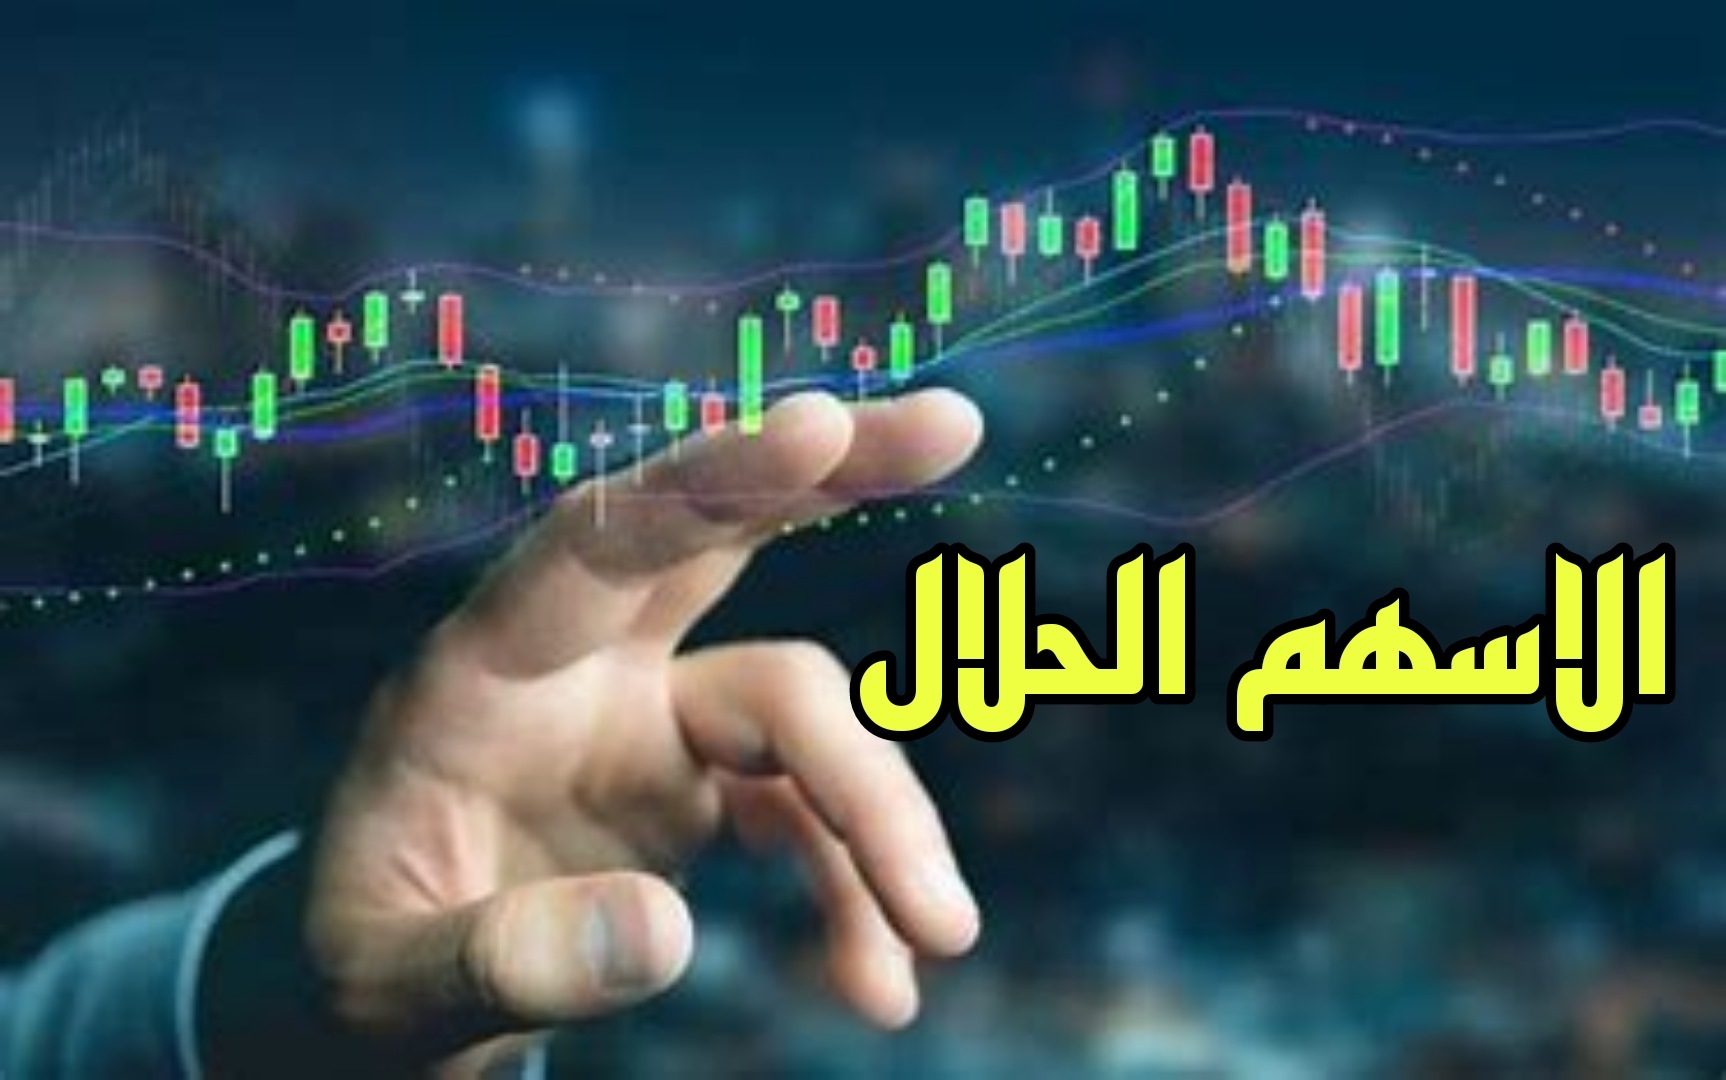 الأسهم الحلال: دليل شامل للاستثمار المتوافق مع المبادئ الإسلامية (فيديو  توضيحي) - Stock Hunter صائد الاسهم الامريكية